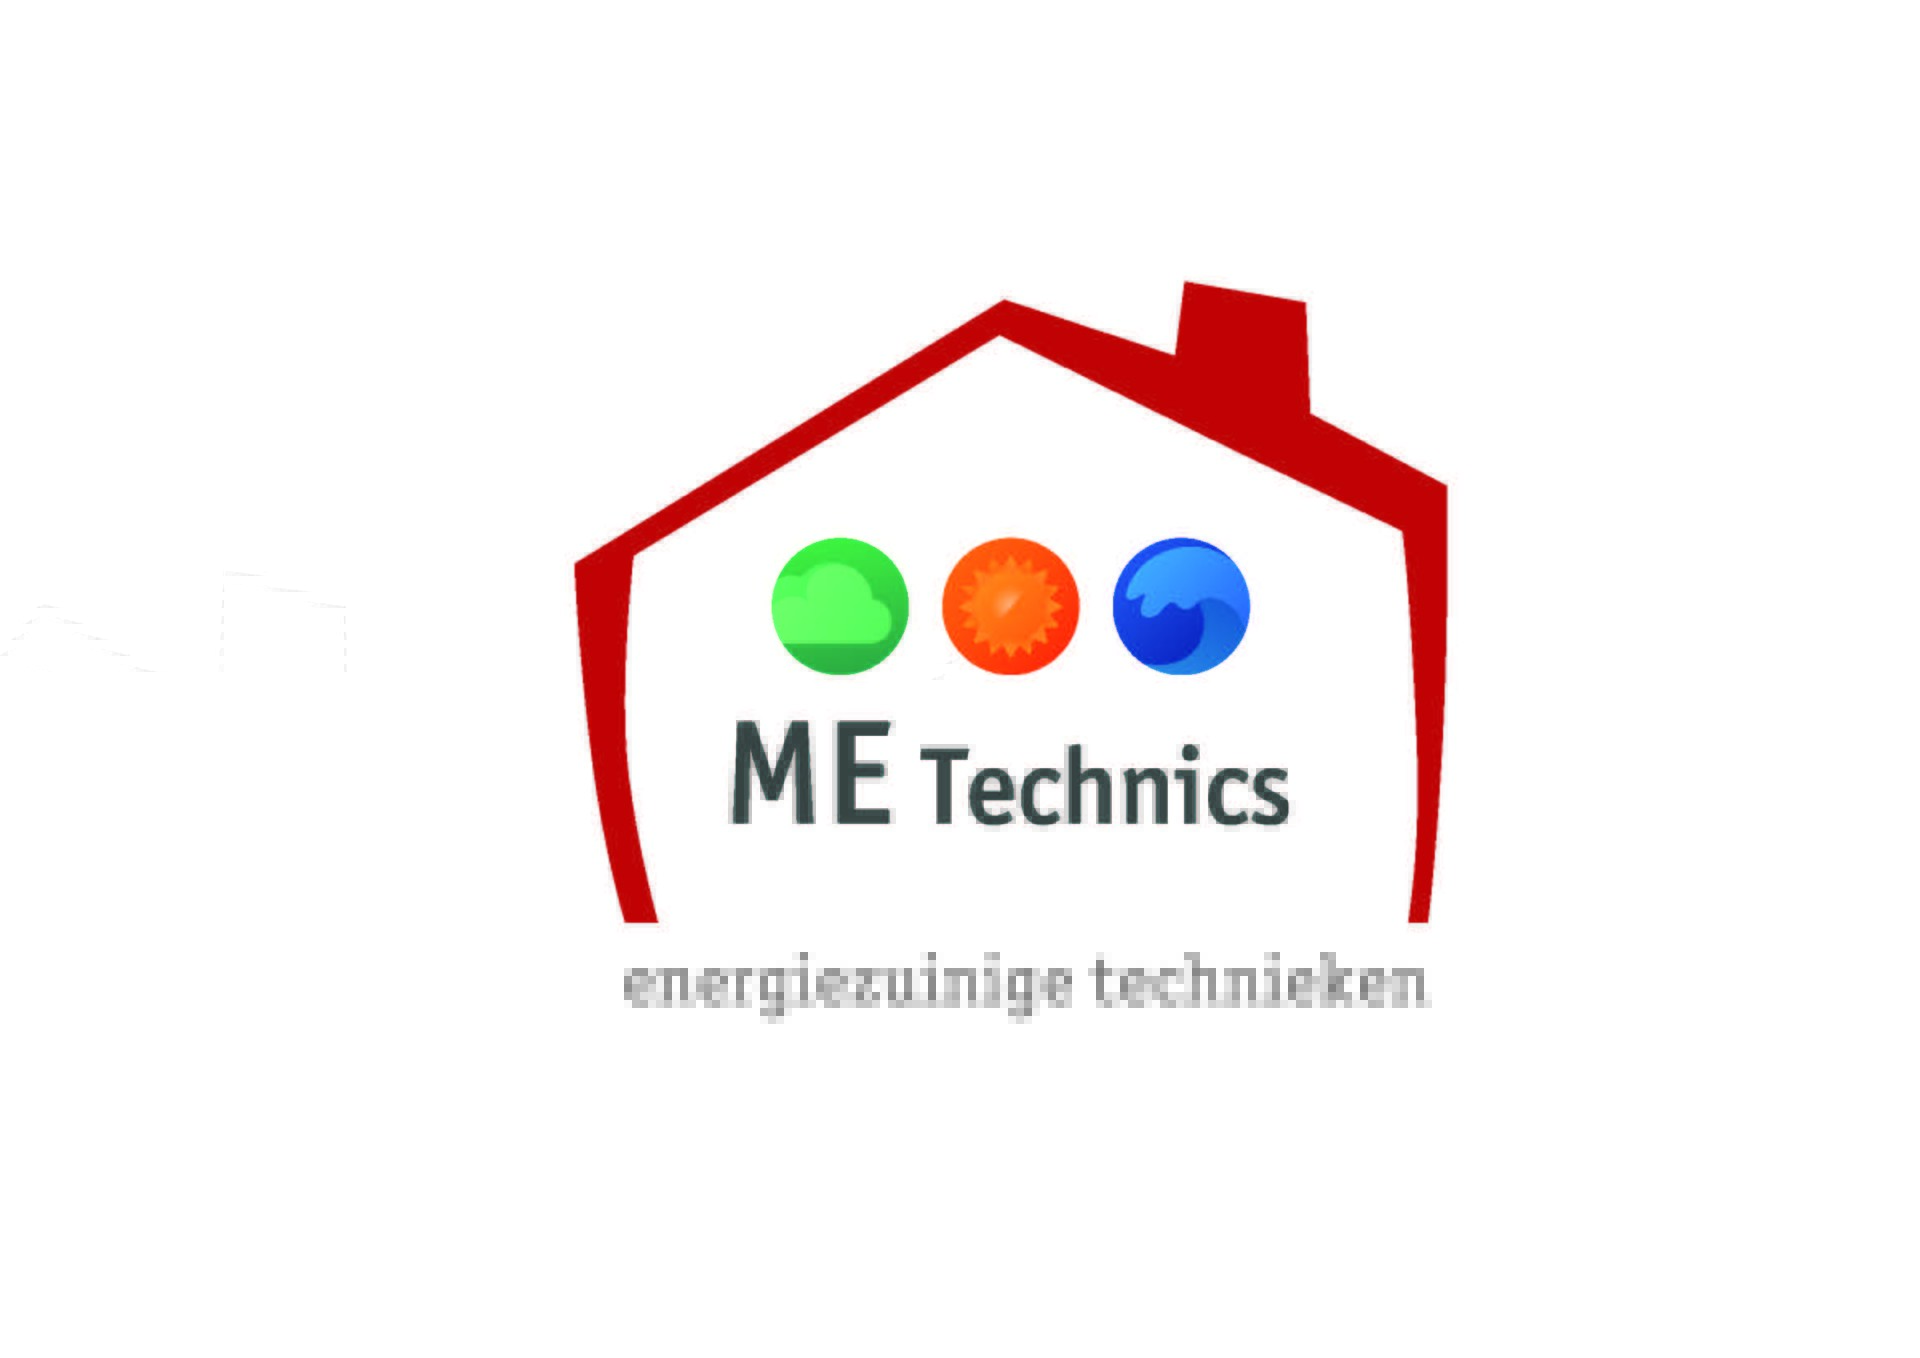 me_technics_logo_alt_002.jpeg2_